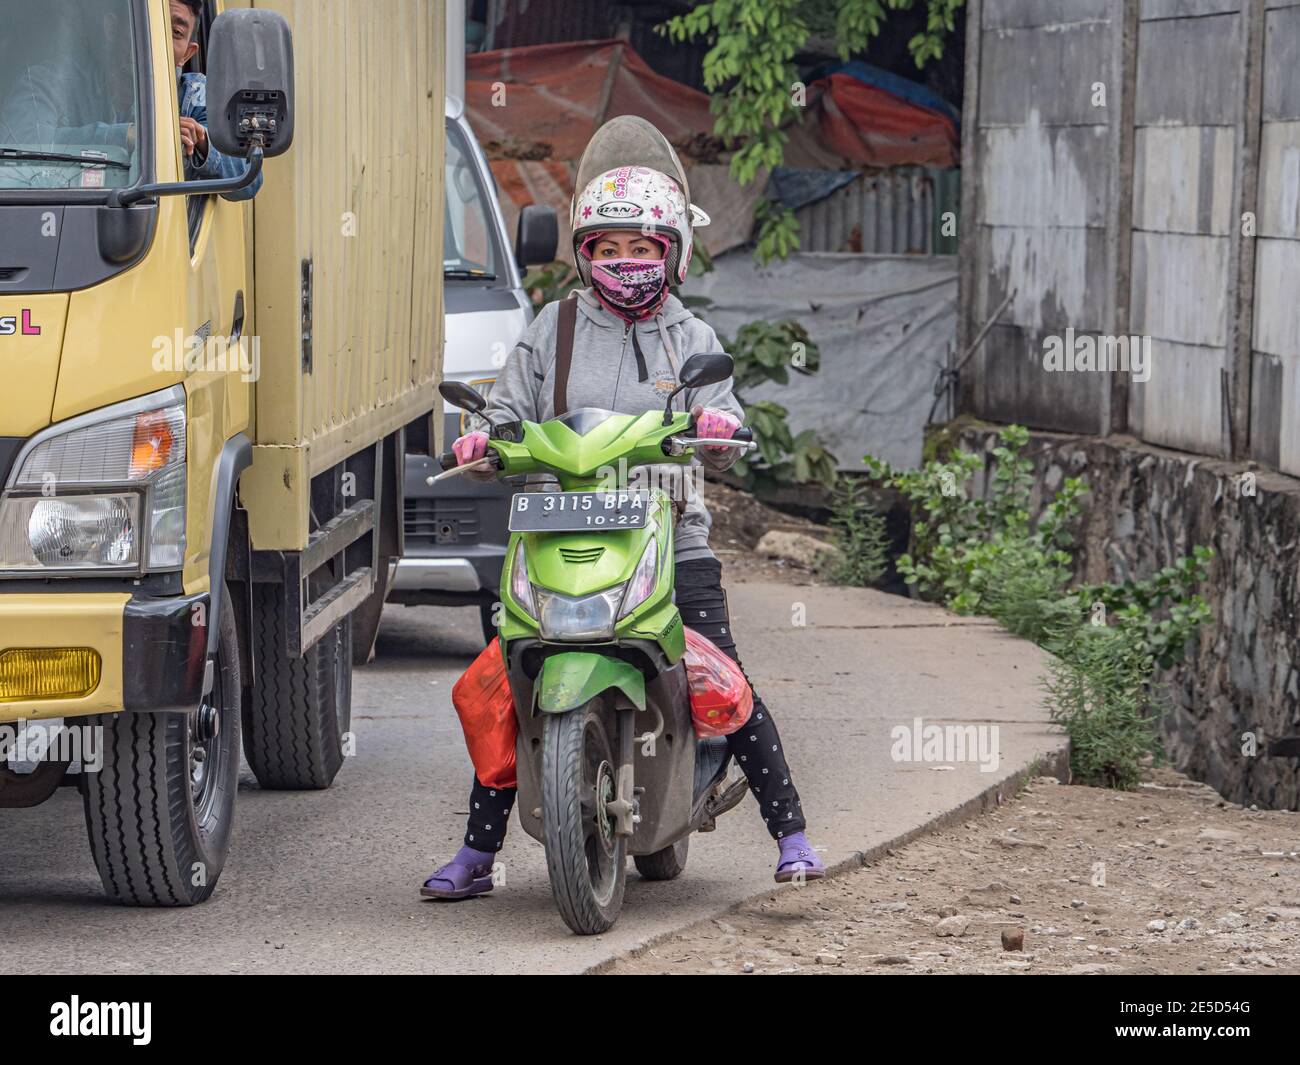 Jakarta, Indonesien - 20. Februar 2018: Frau auf einem Motorrad in einem Helm, Flip Flops und einer Gesichtsmaske auf der Straße in Jakarta. Asien. Stockfoto